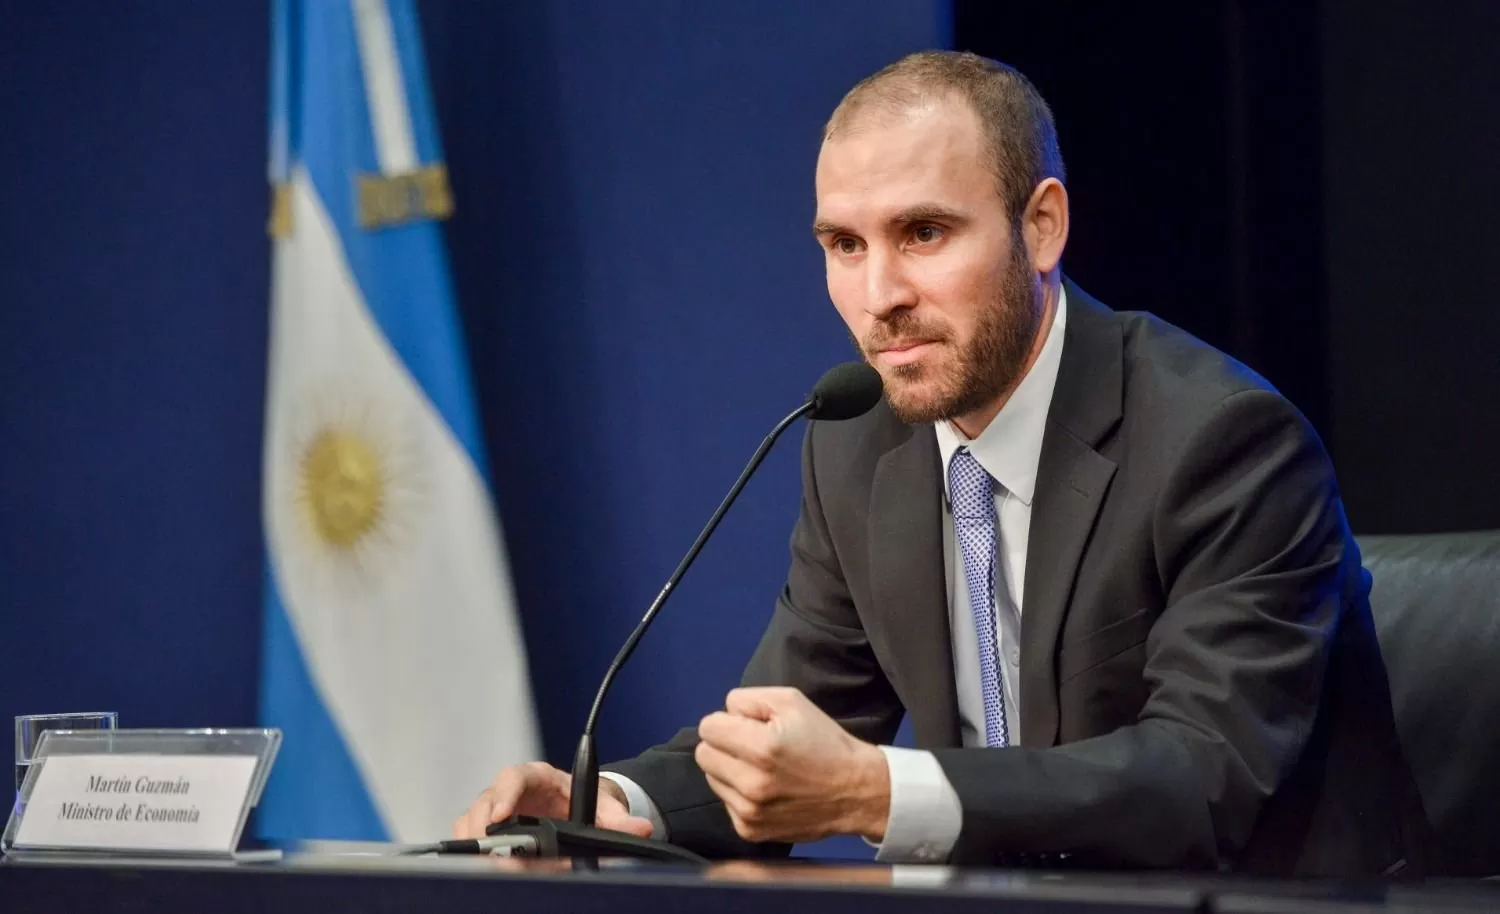 Tras las declaraciones de Cristina Kirchner, Martín Guzmán destaca los avances con el FMI